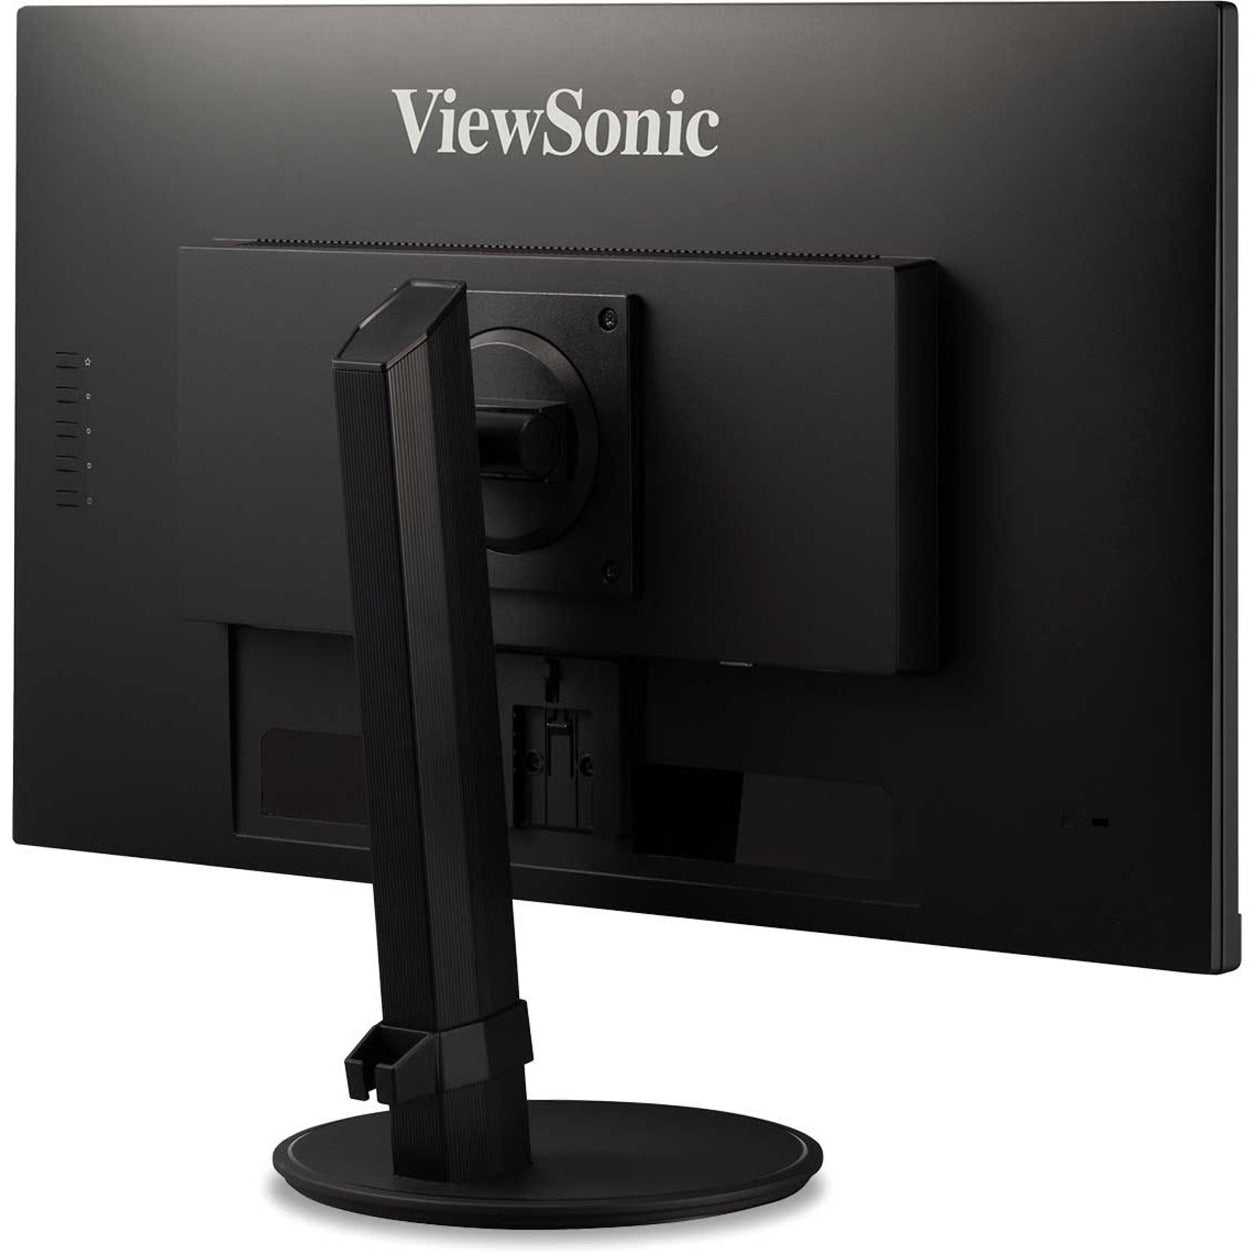 ViewSonic VA2447-MHJ 24" Display, MVA Panel, 1080P Full Ergonomic Monitor with HDMI and VGA